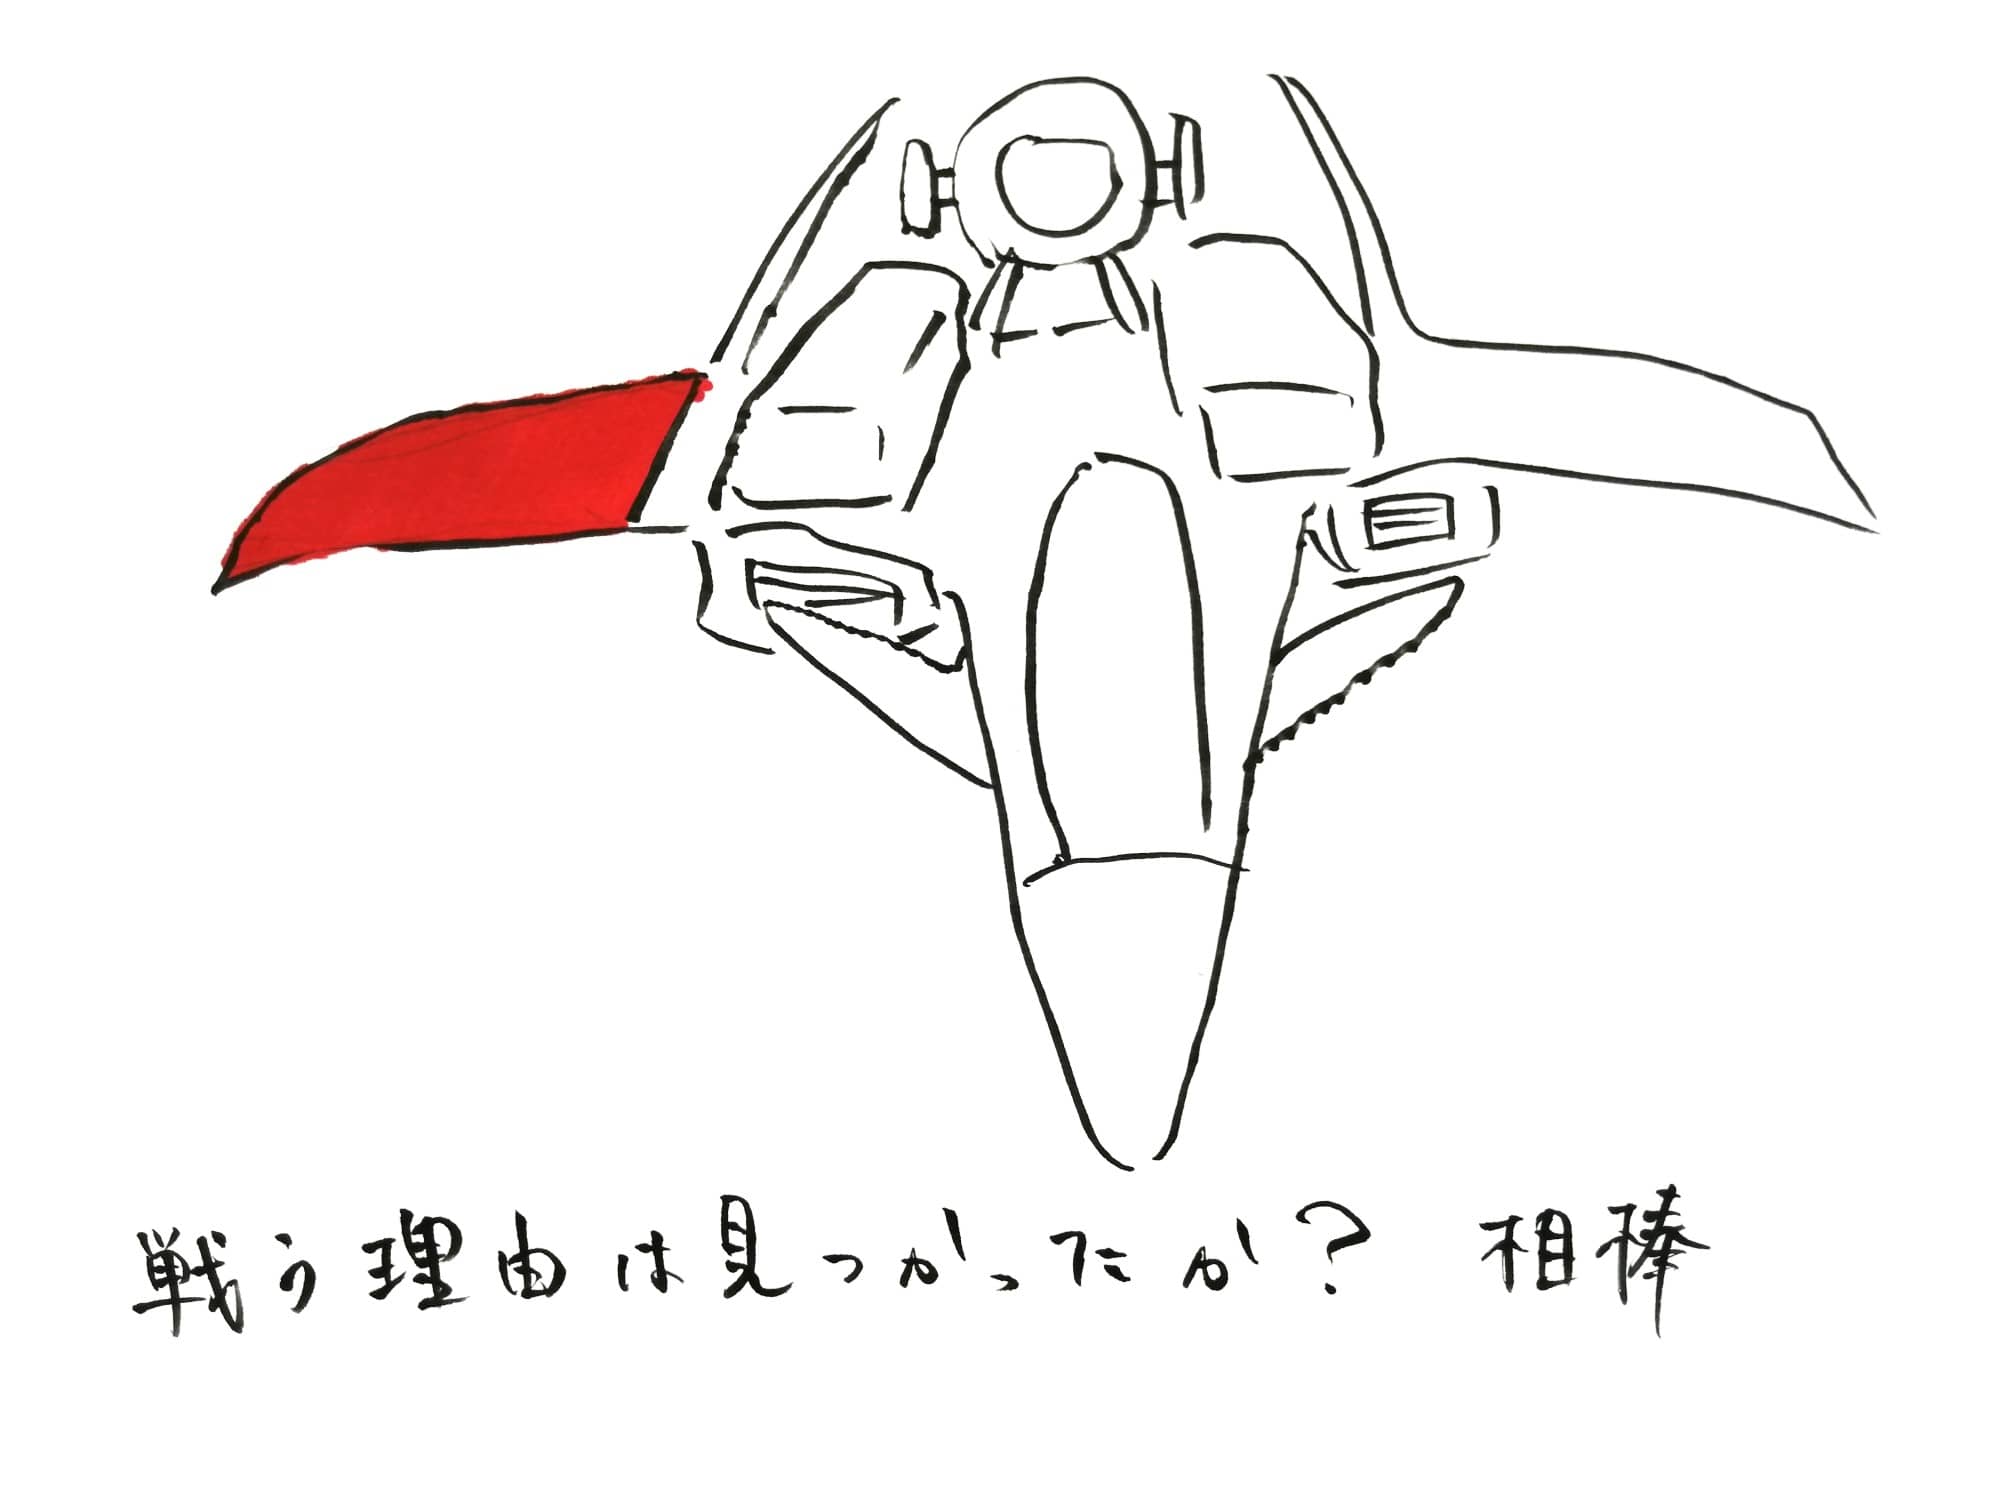 戦闘機の画像